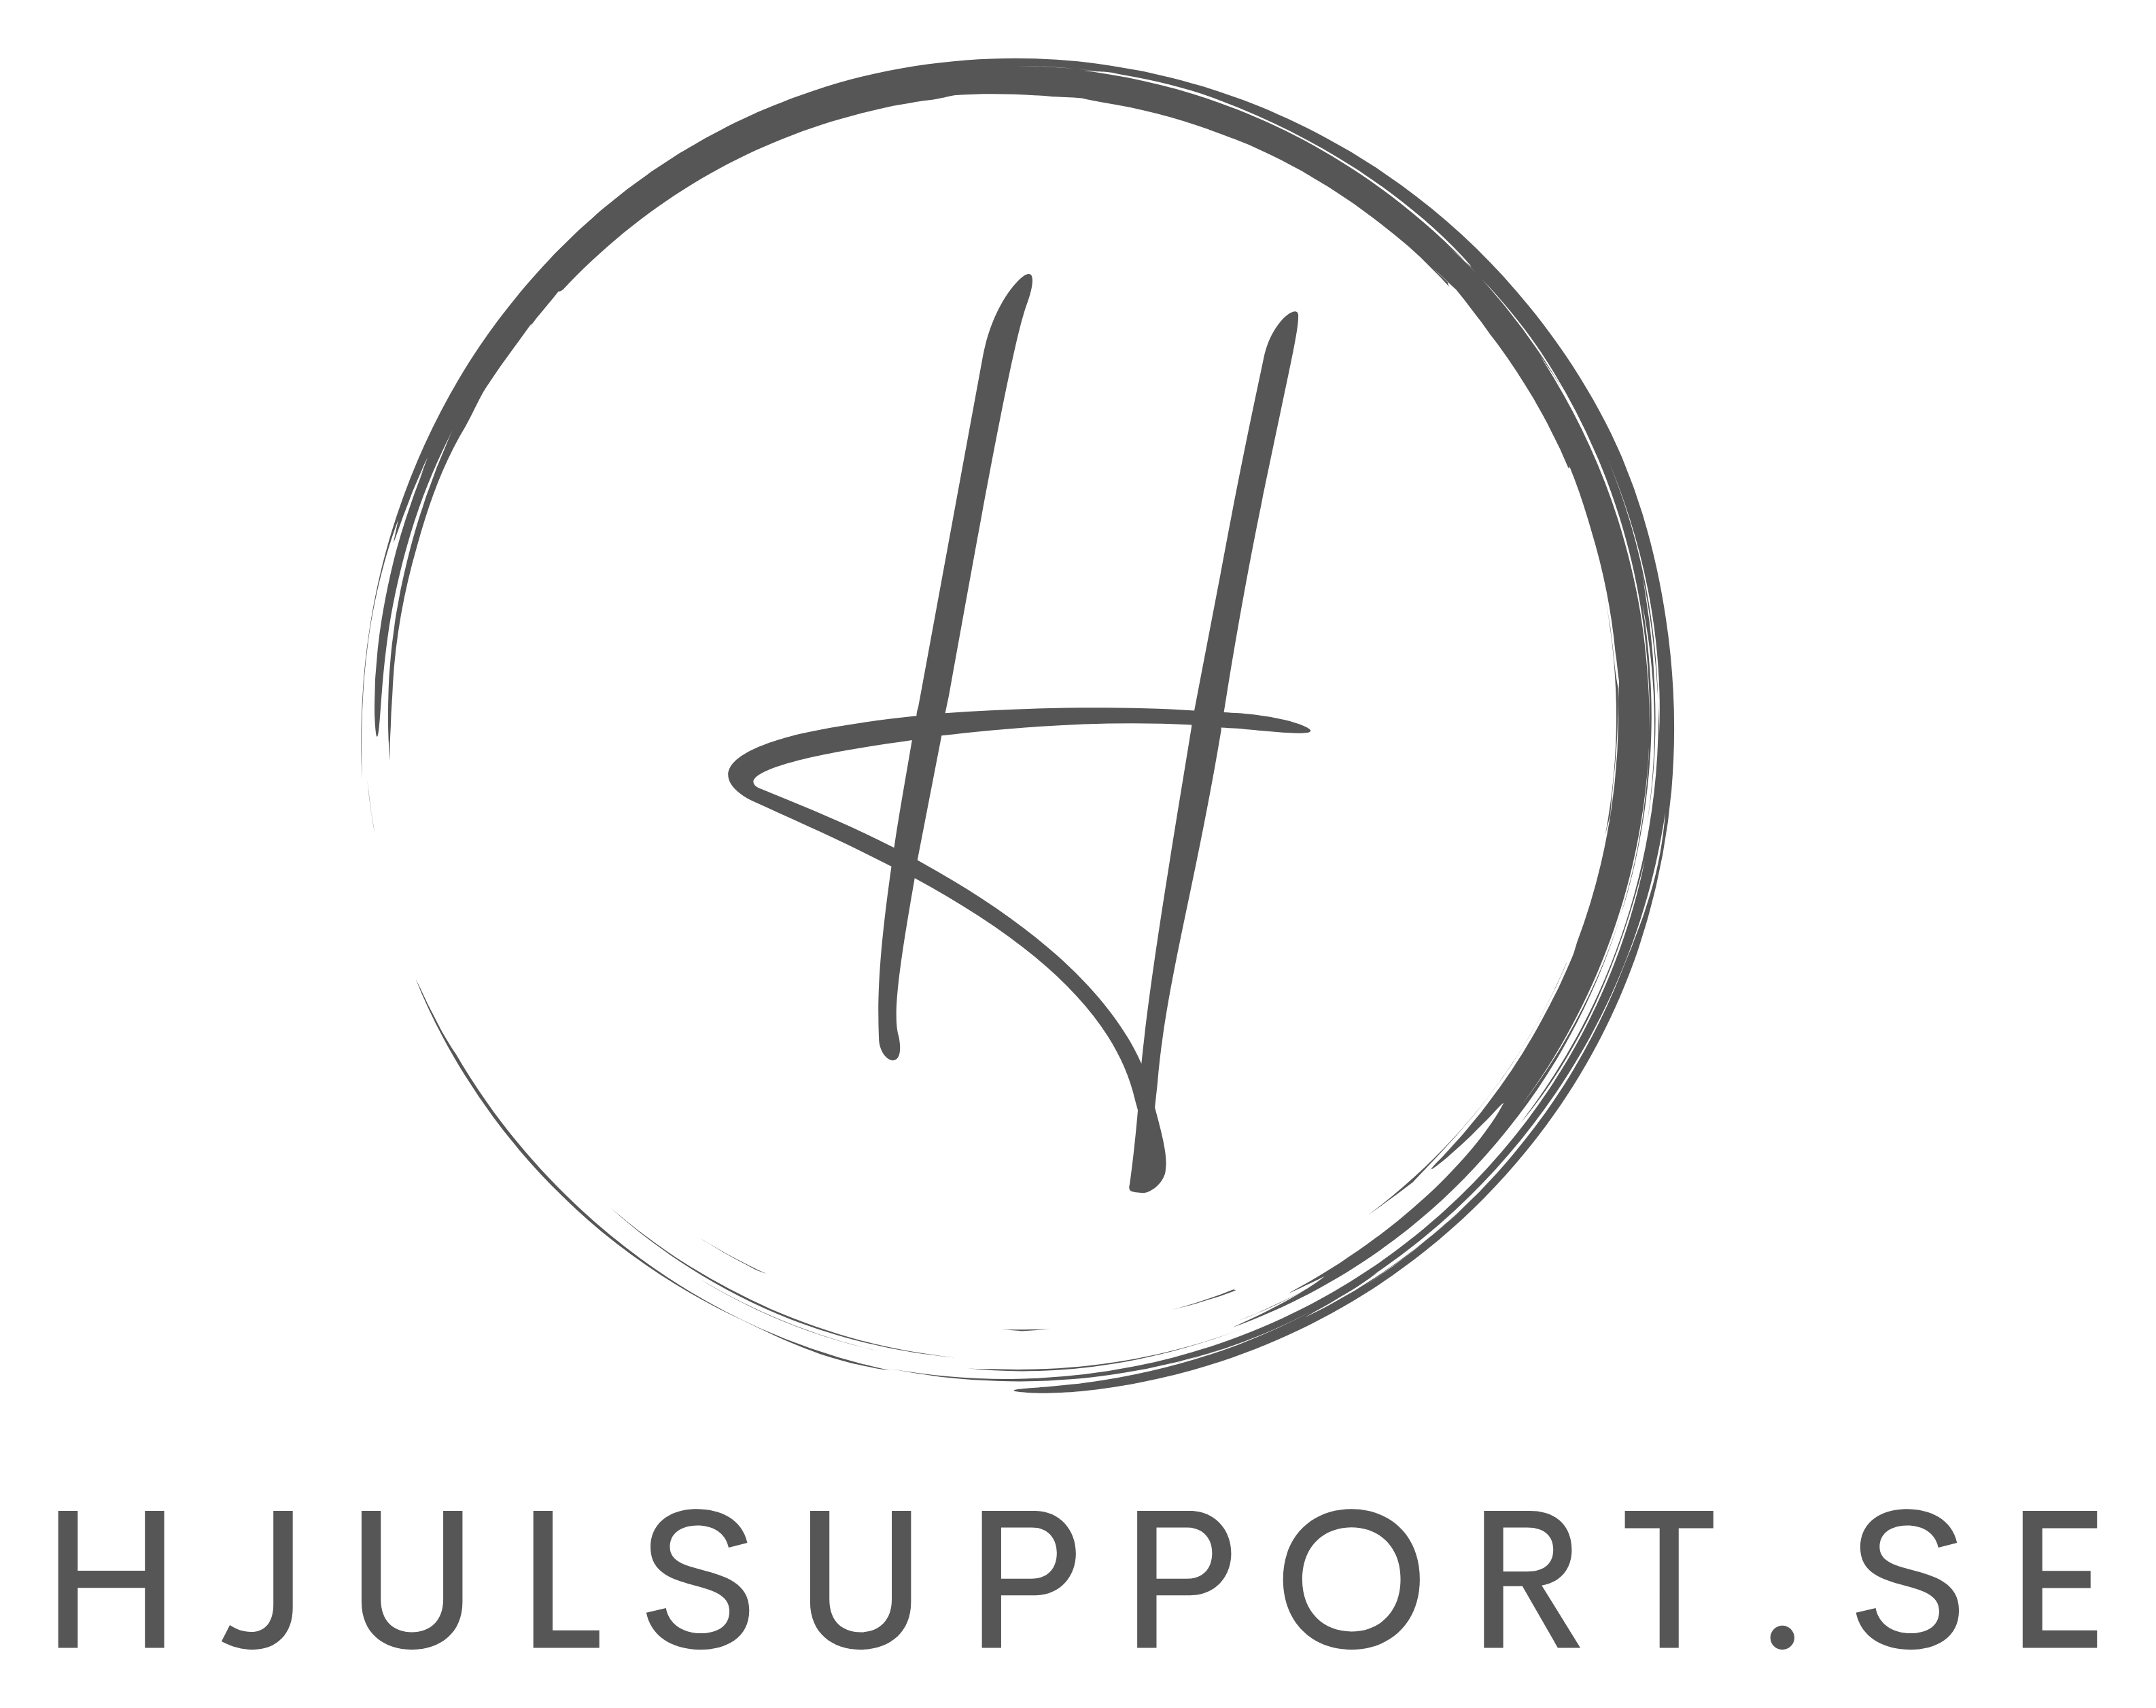 Hjulsupport & Verkstad logo